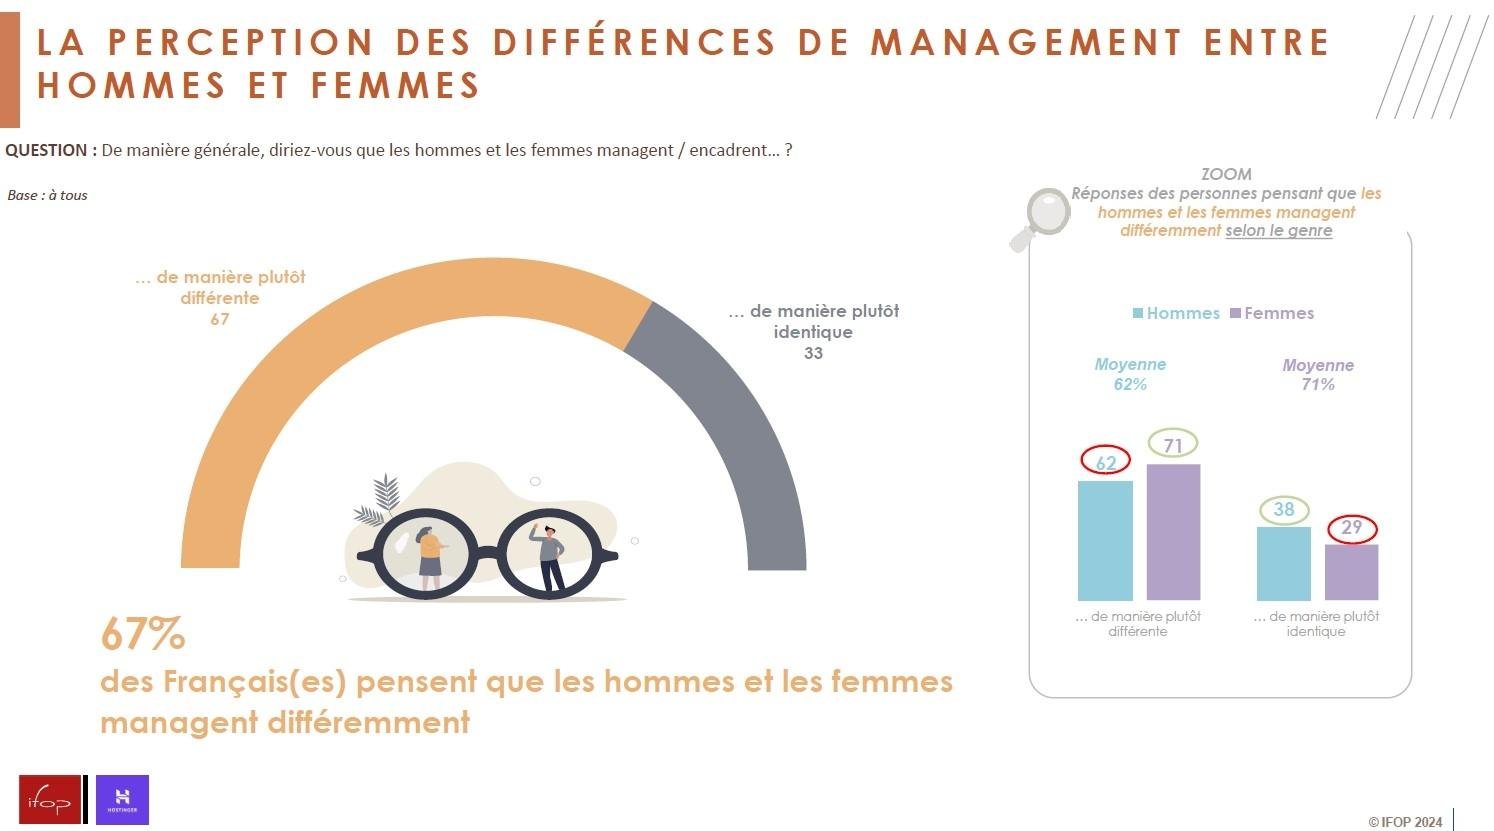 Infographie illustrant la perception des répondants sur les différences de management entre hommes et femmes.